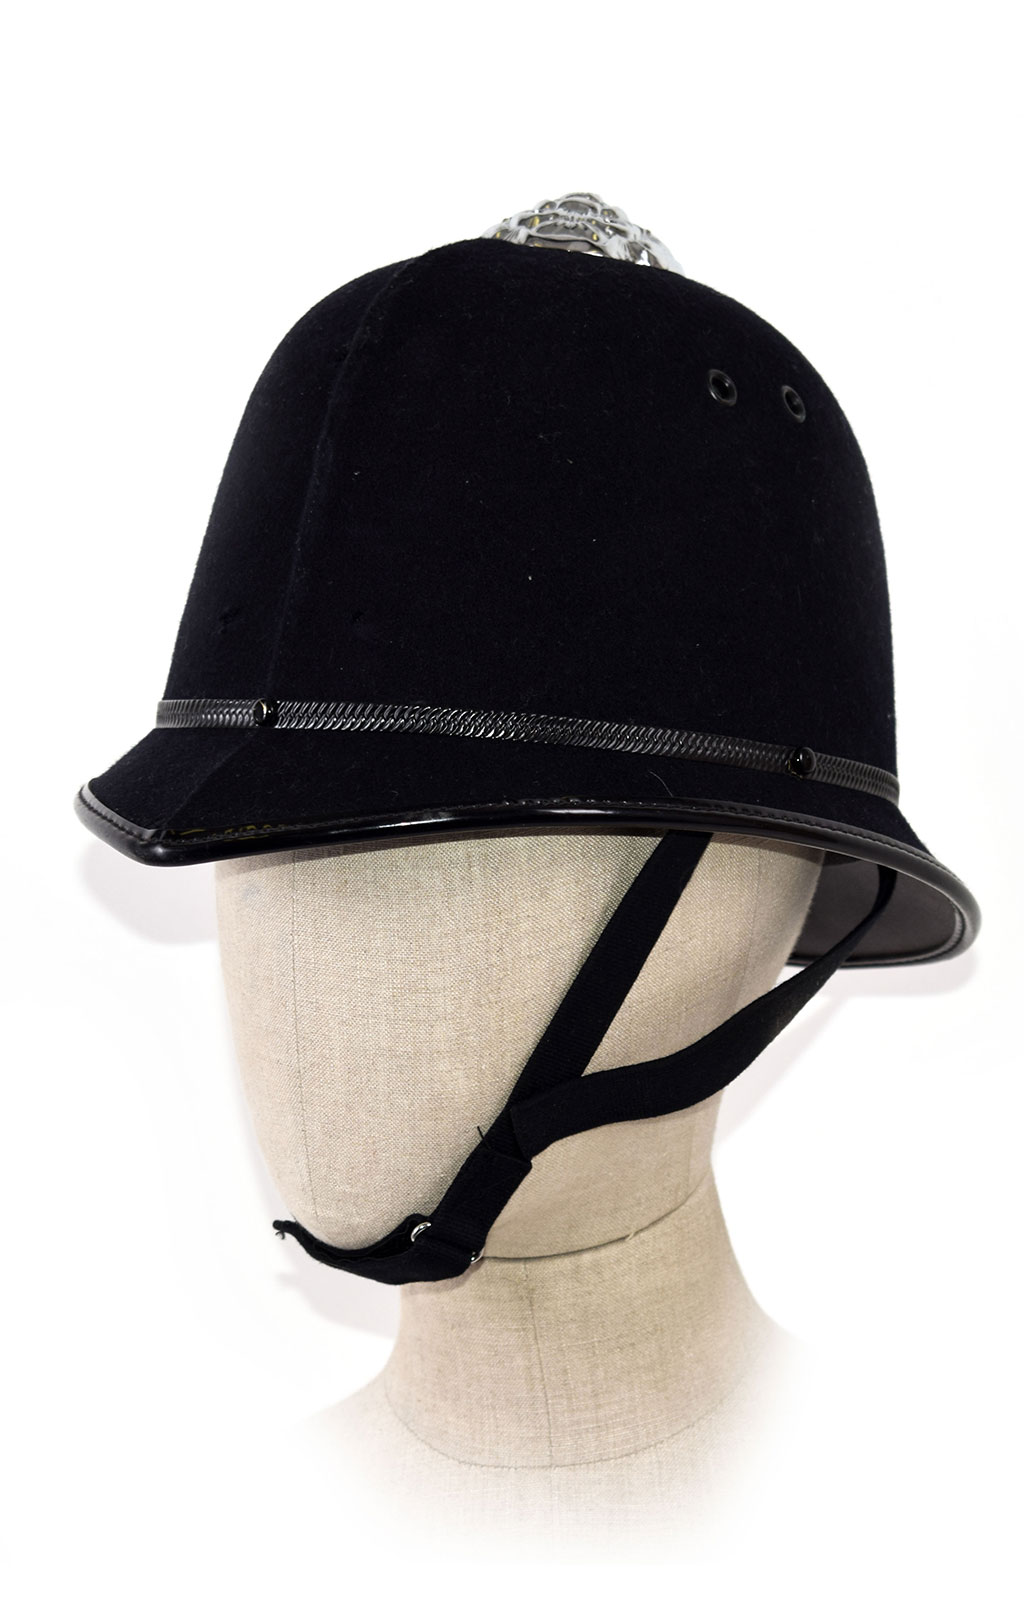 Шлем полицейский для знака на заколке б/у Англия